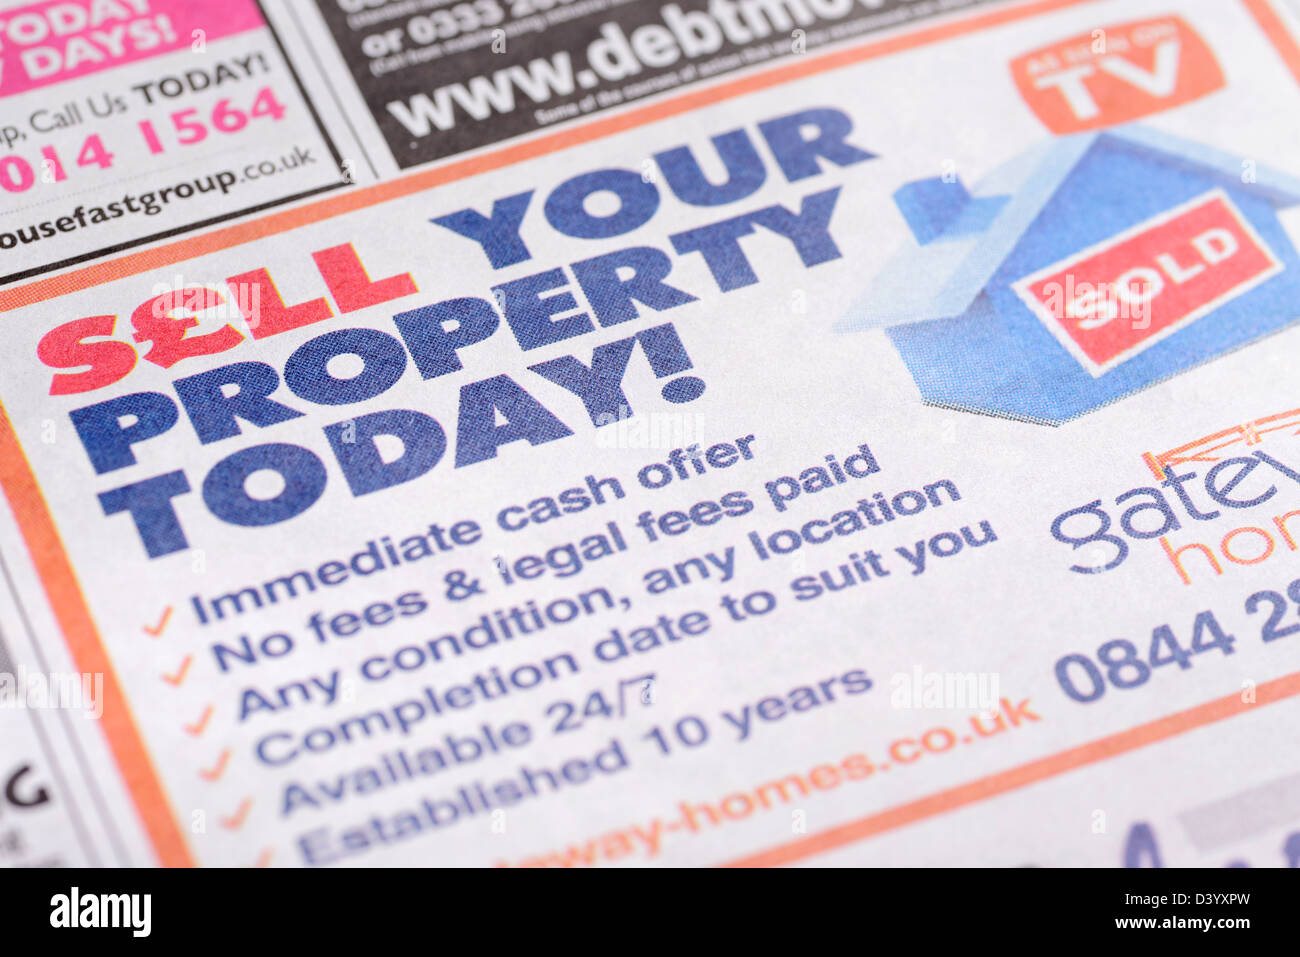 Vender su propiedad por efectivo anuncio en un periódico, Reino Unido. Foto de stock